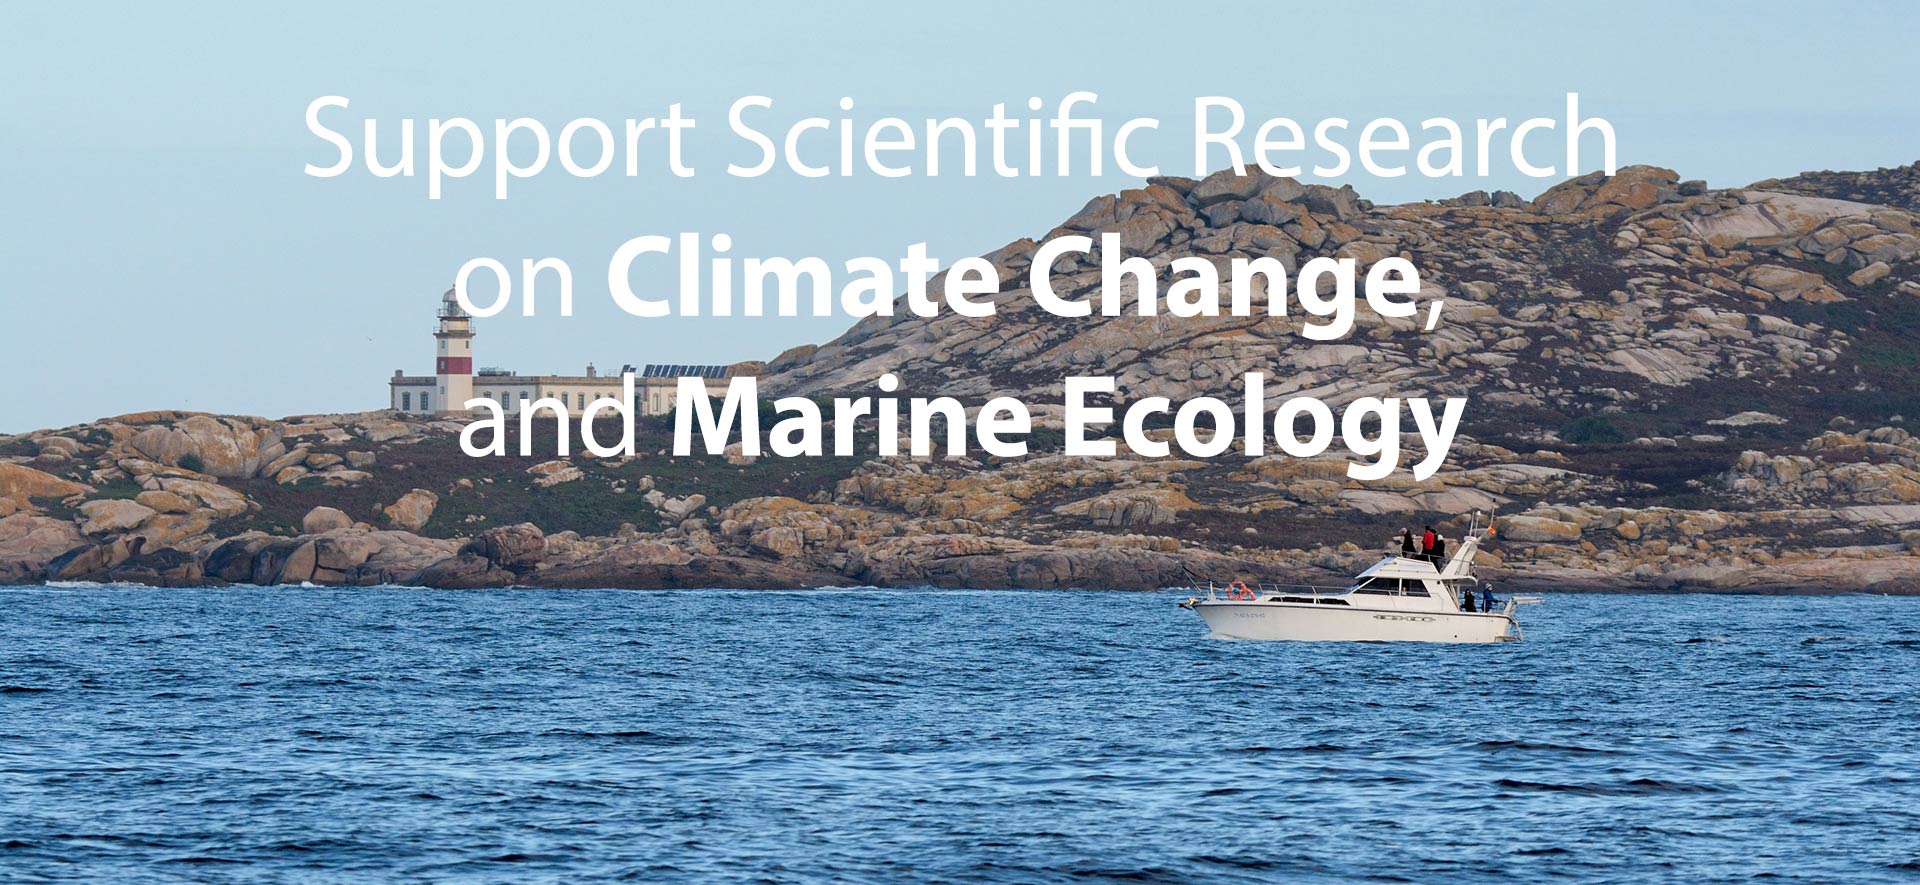 Colabora en la conservación y estudio de la biodiversidad marina